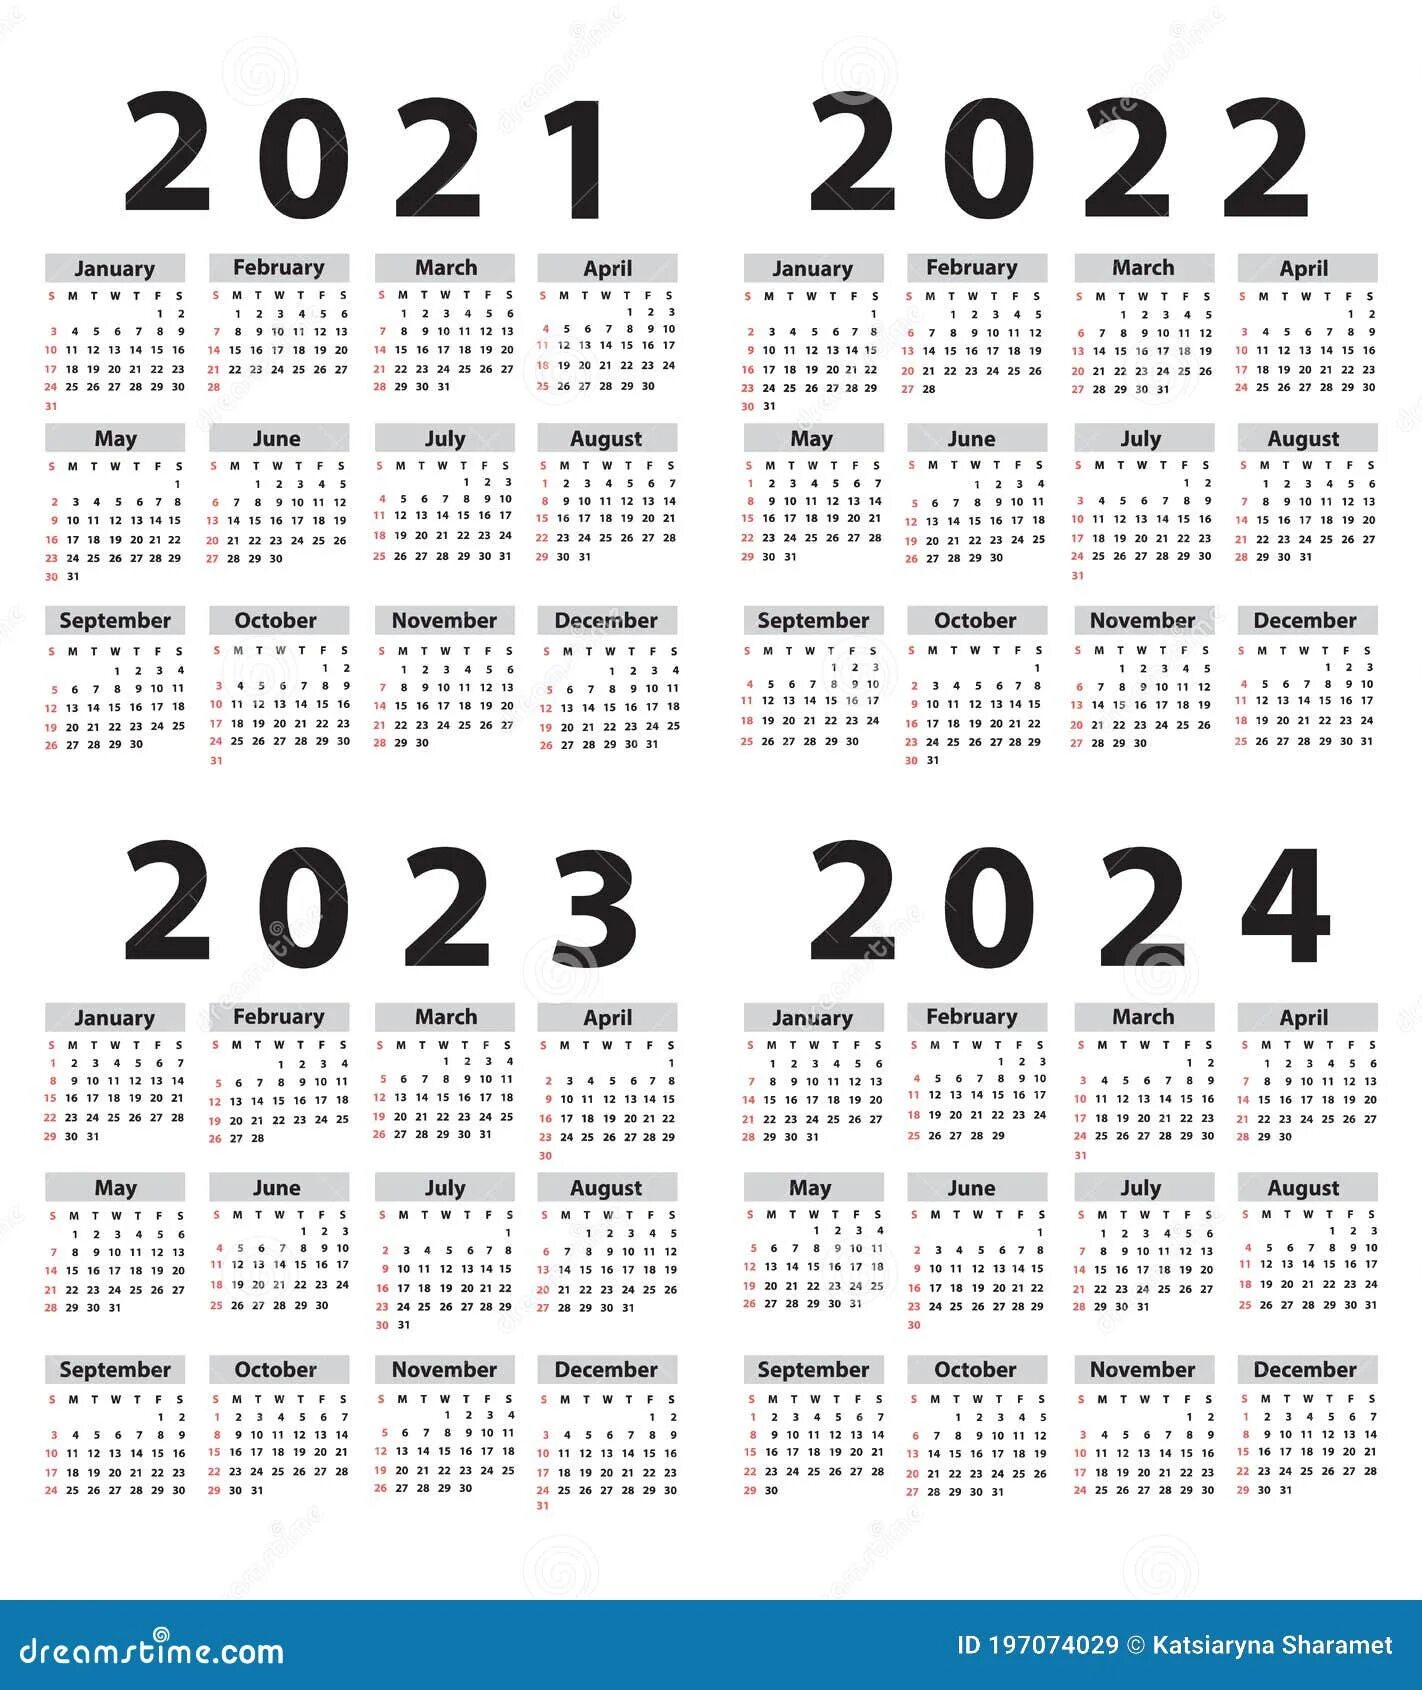 Календарь 2021 2022 2023 2024 2025. Календарь 2021-2022. Календарь 2022-2023 год. Календарь 2022-2024.